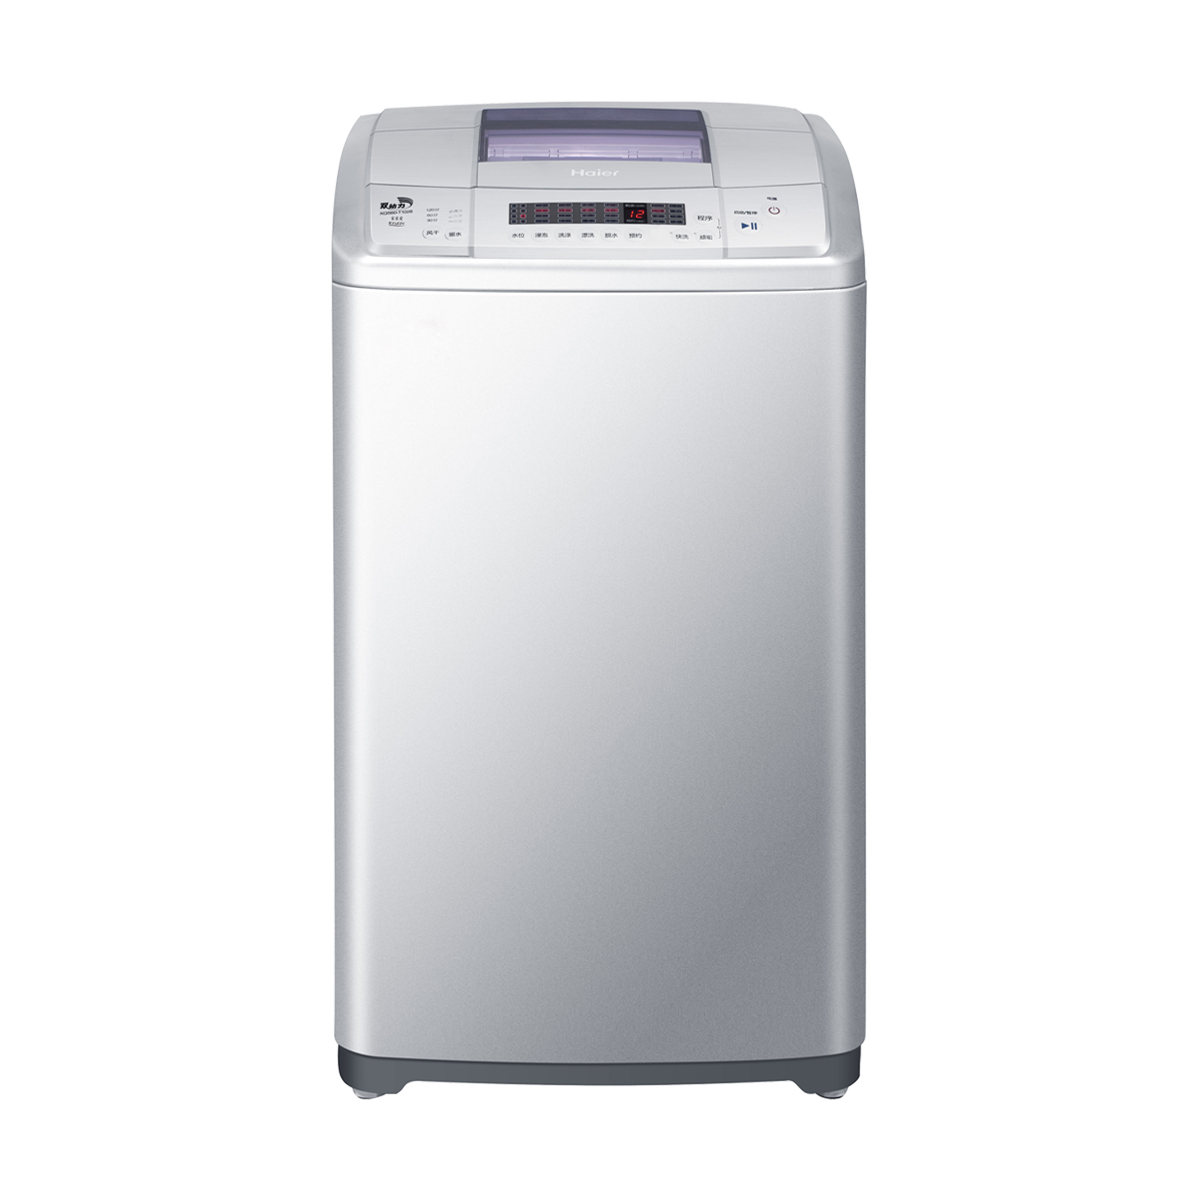 海尔Haier洗衣机 XQS60-T1028 说明书